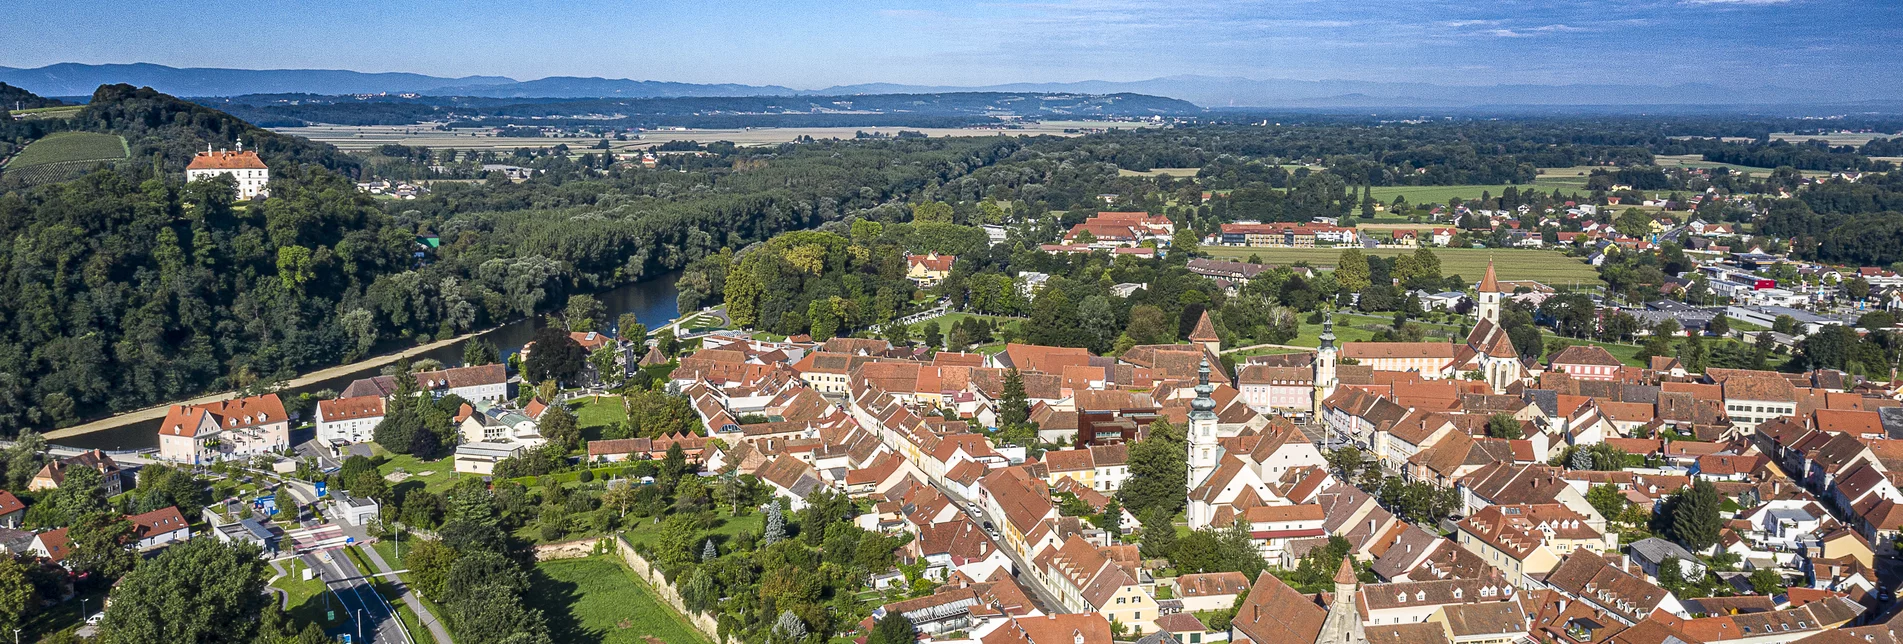 Luftaufnahme der historischen Altstadt Bad Radkersburg | ©pixelmaker.at | Robert Sommerauer